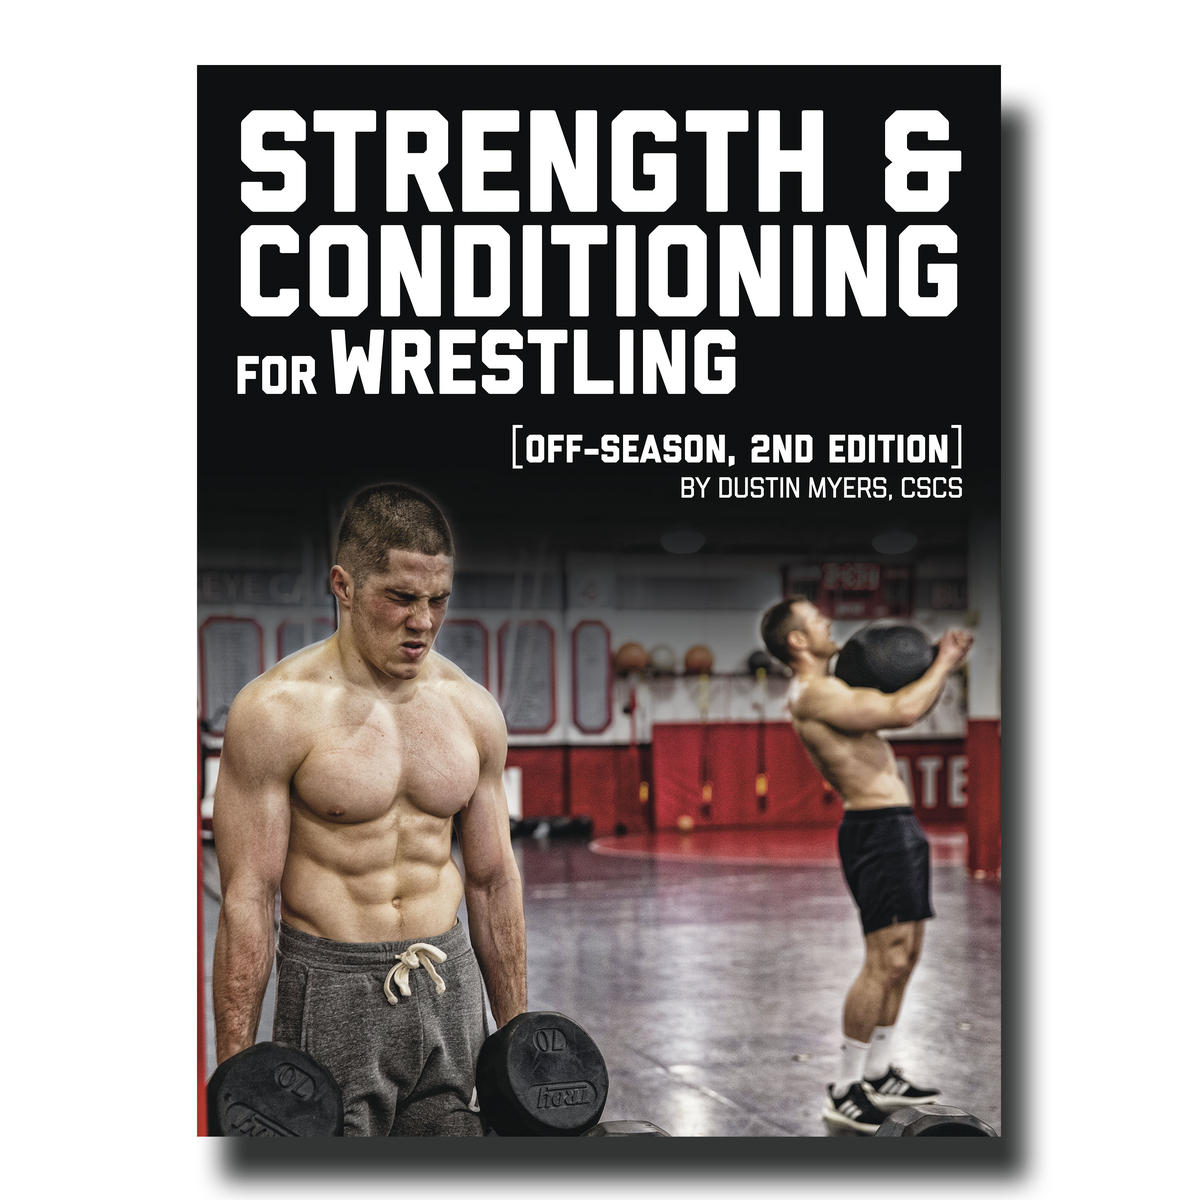 Dustin Myers E Book Guide For Wrestling